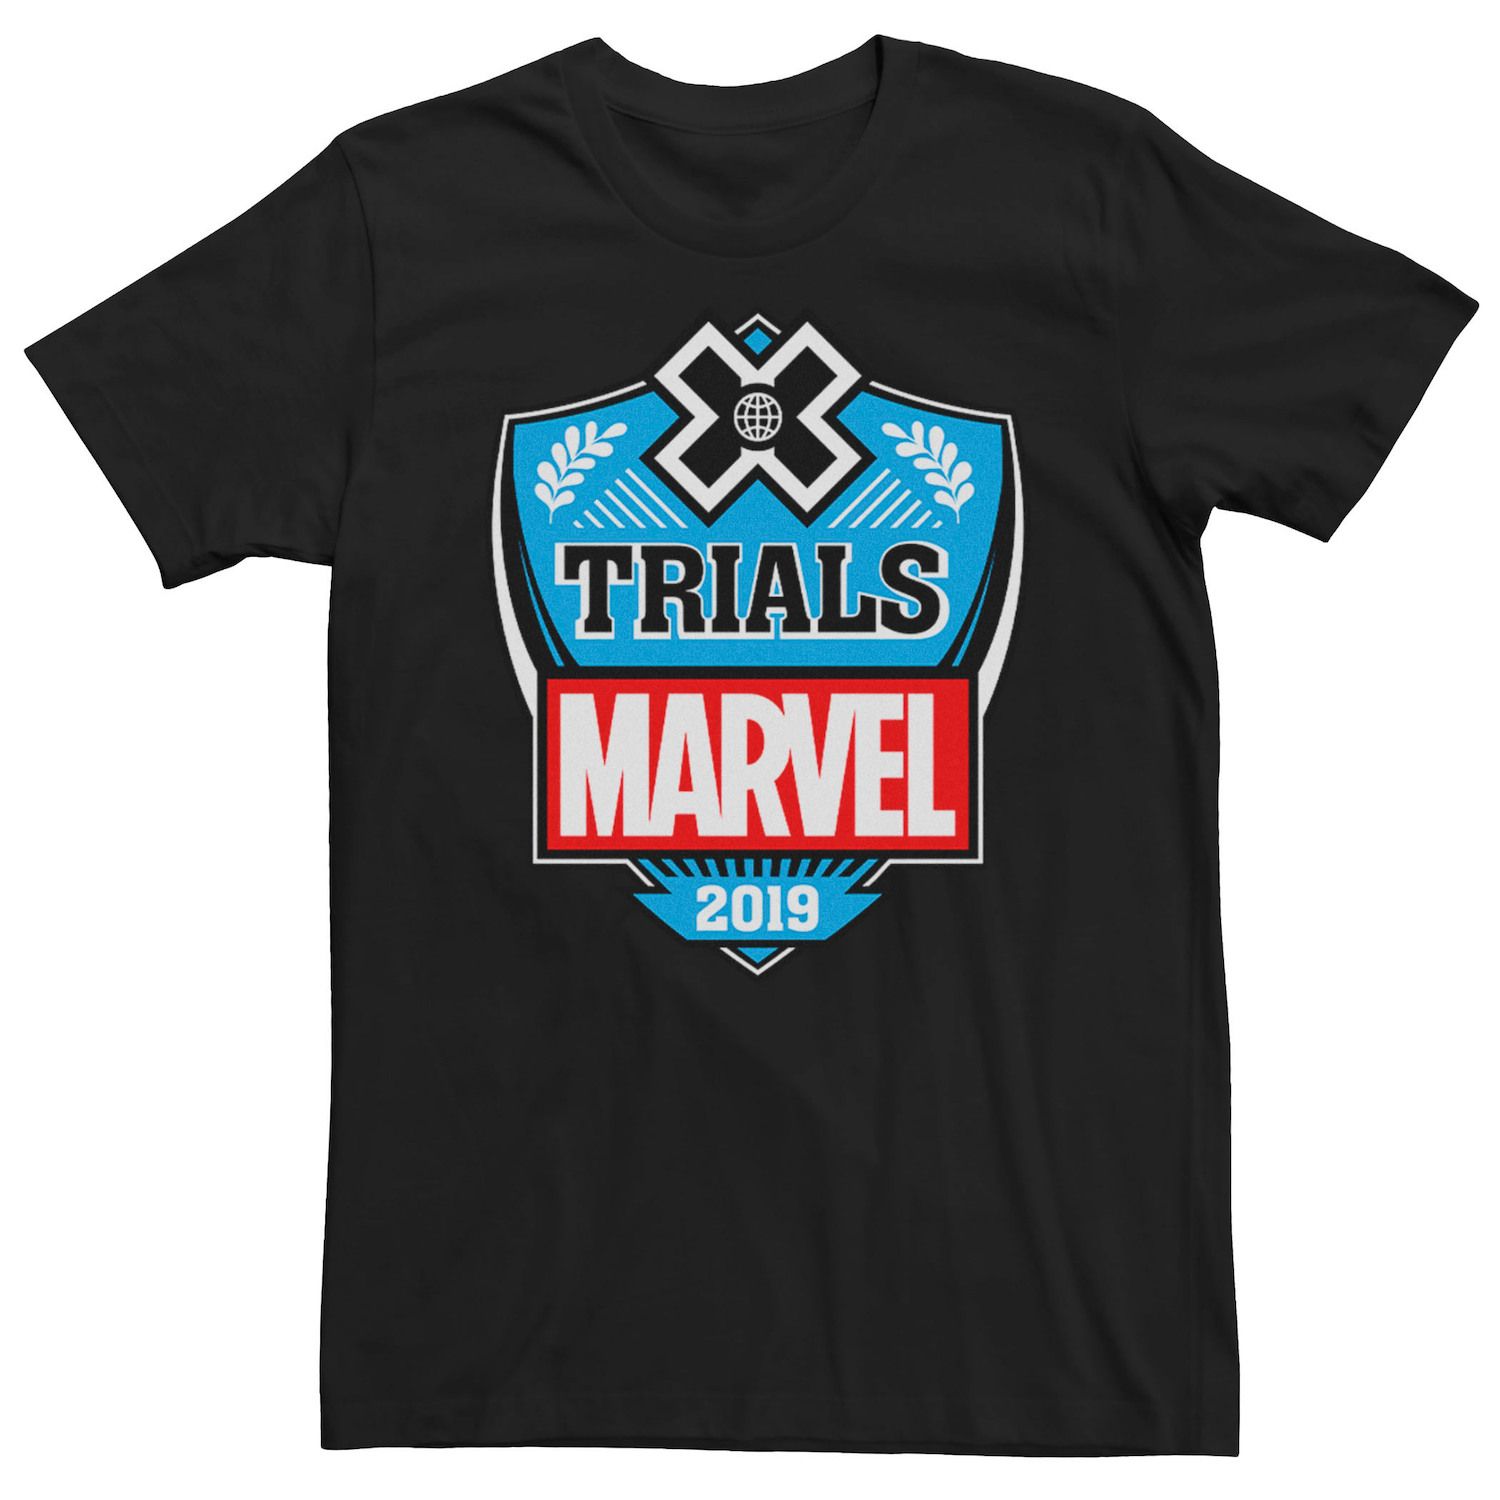 Мужская футболка Trials Marvel, черный trials rising